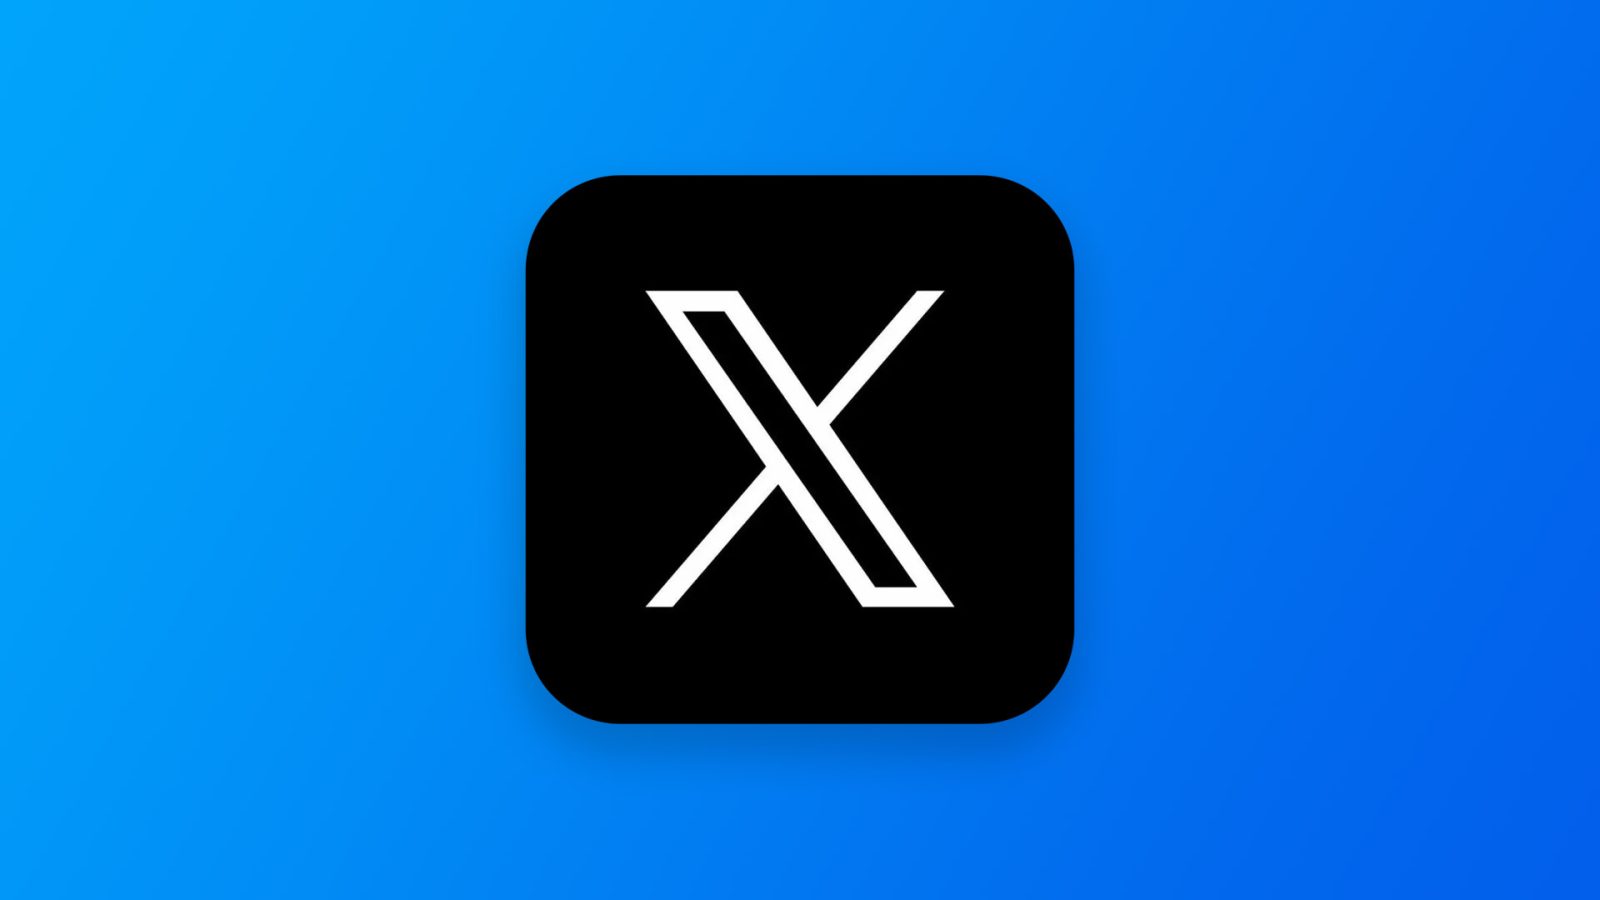 X Twitter-logo app-pictogram